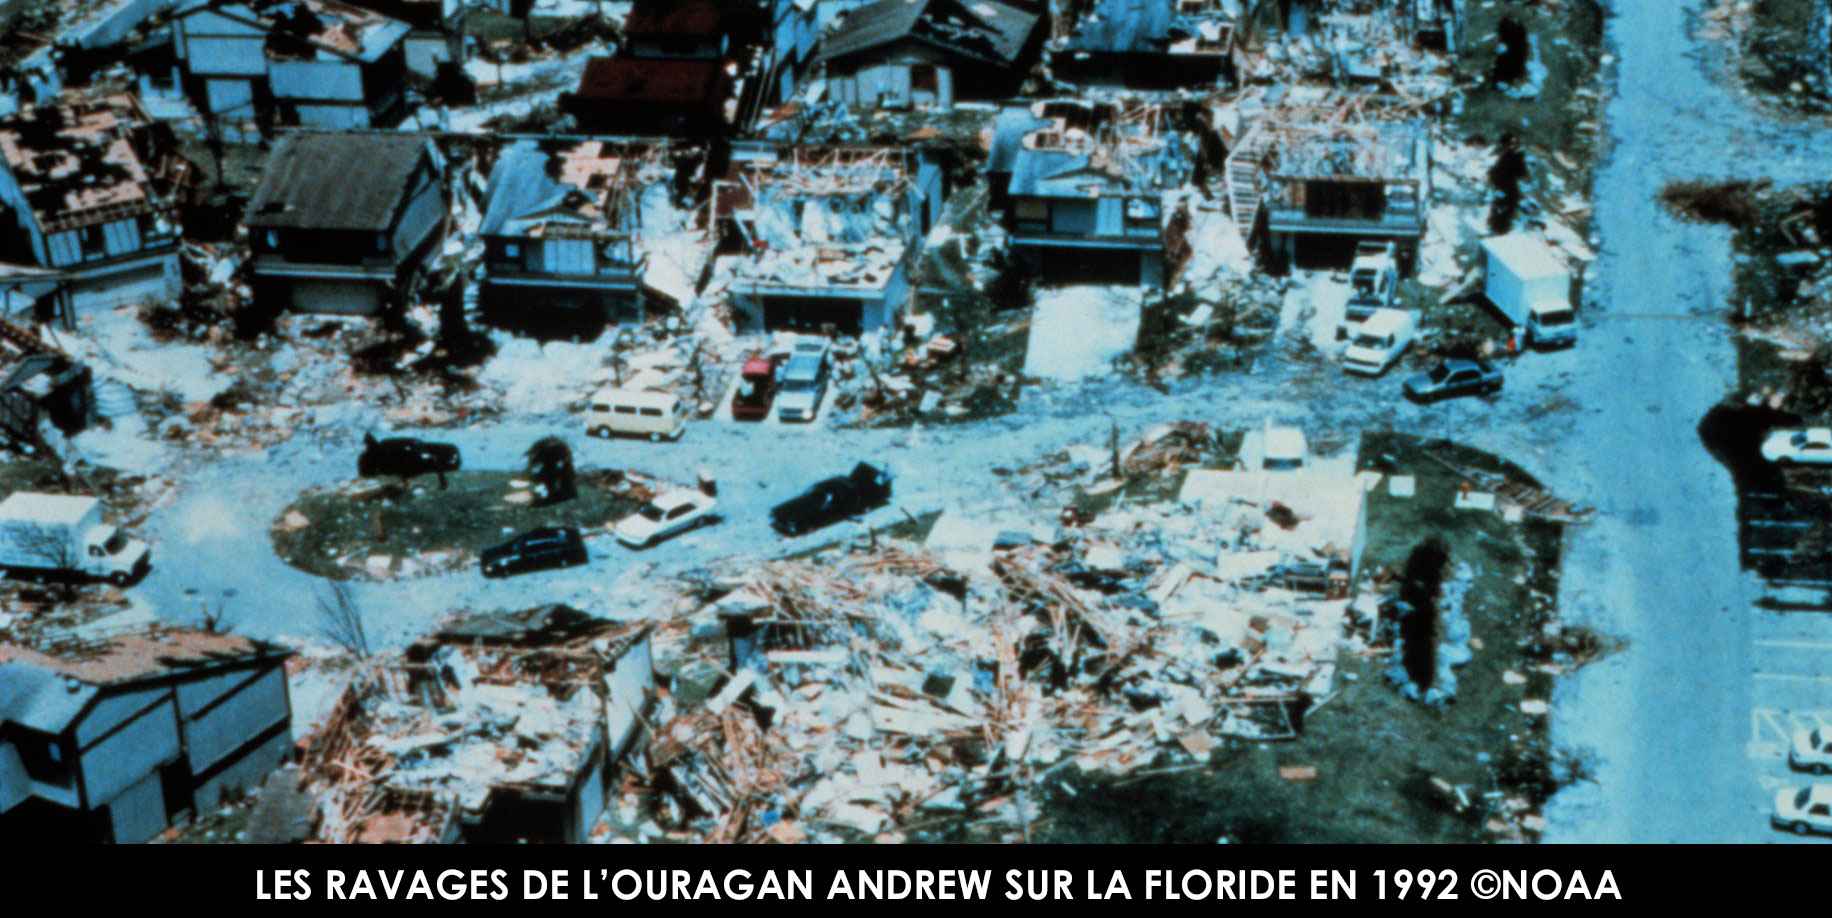 Les ravages de l'ouragan ANDREW sur la Floride en 1992 ©NOAA